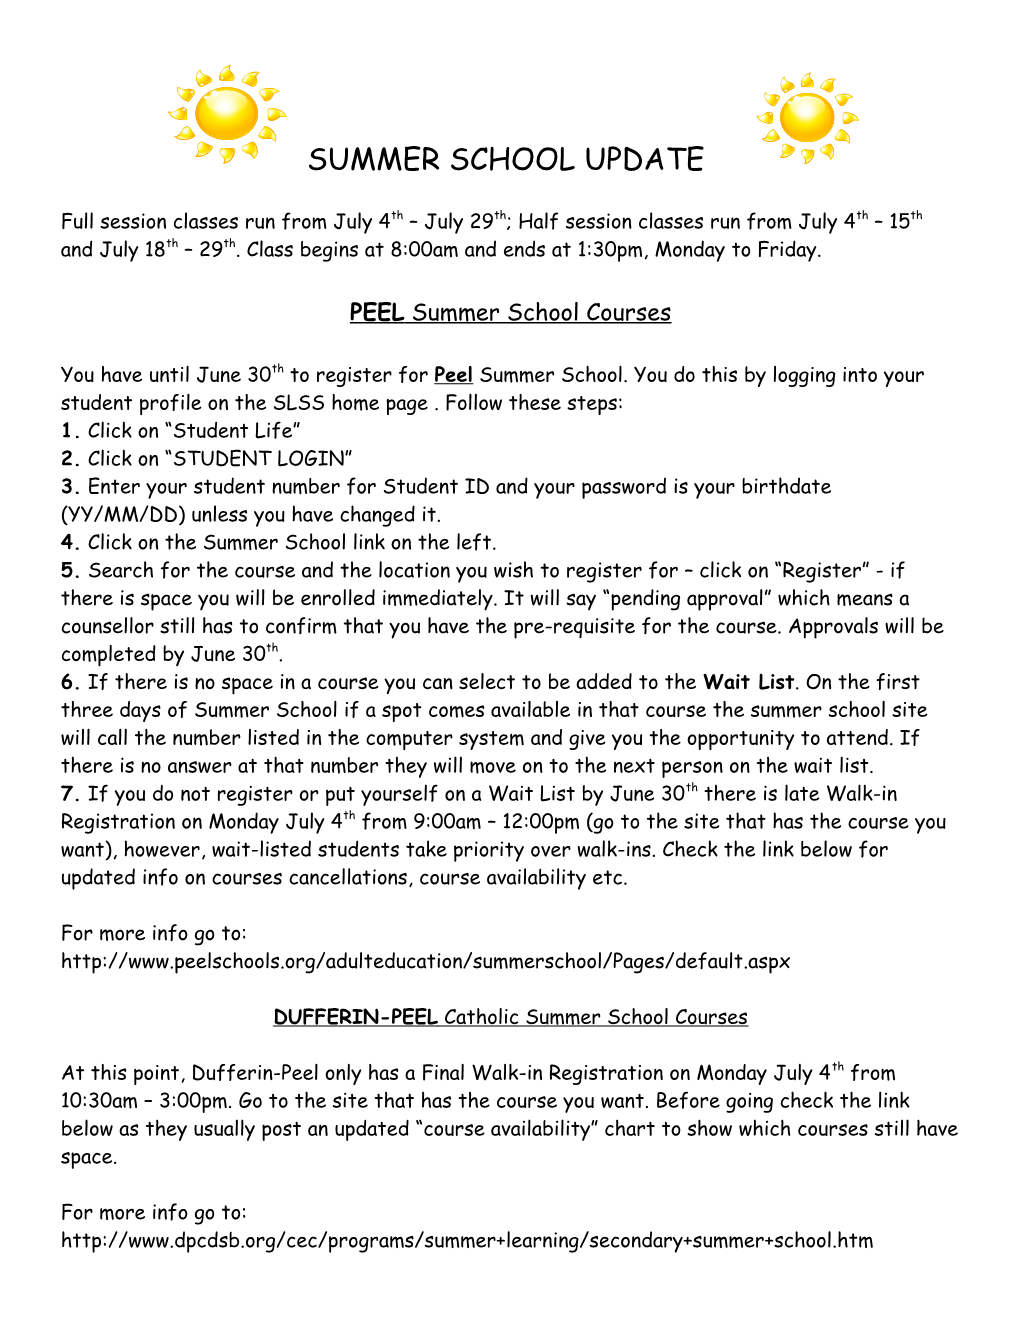 PEEL Summer School Courses